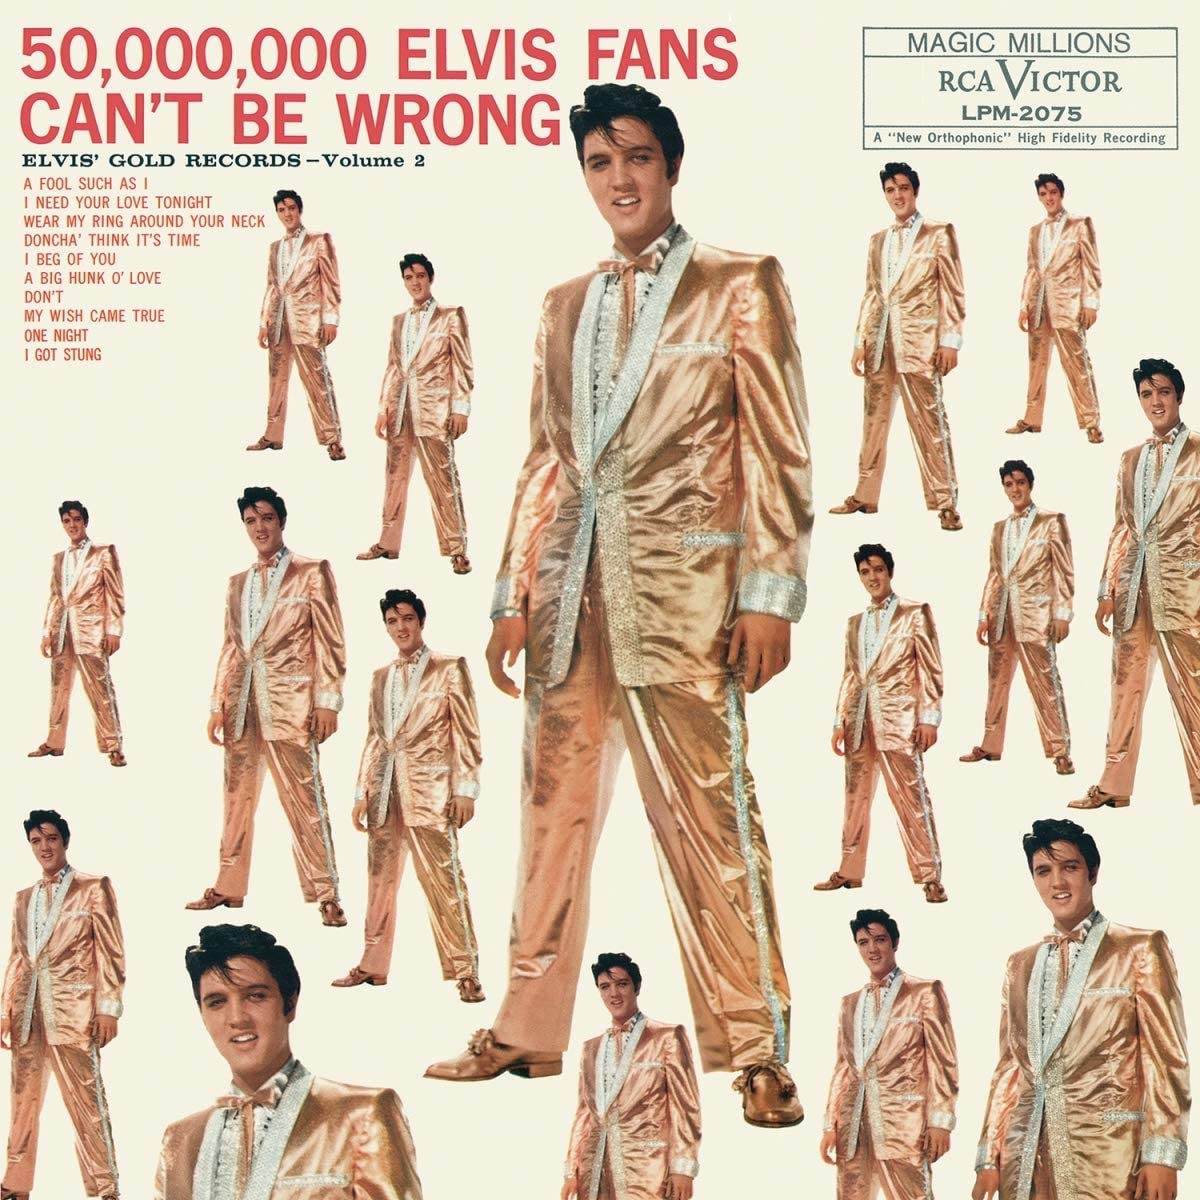 Presley, Elvis - 50,000,000 Elvis Fans Can't Be Wrong: Elvis' Gold Records, Volume 2